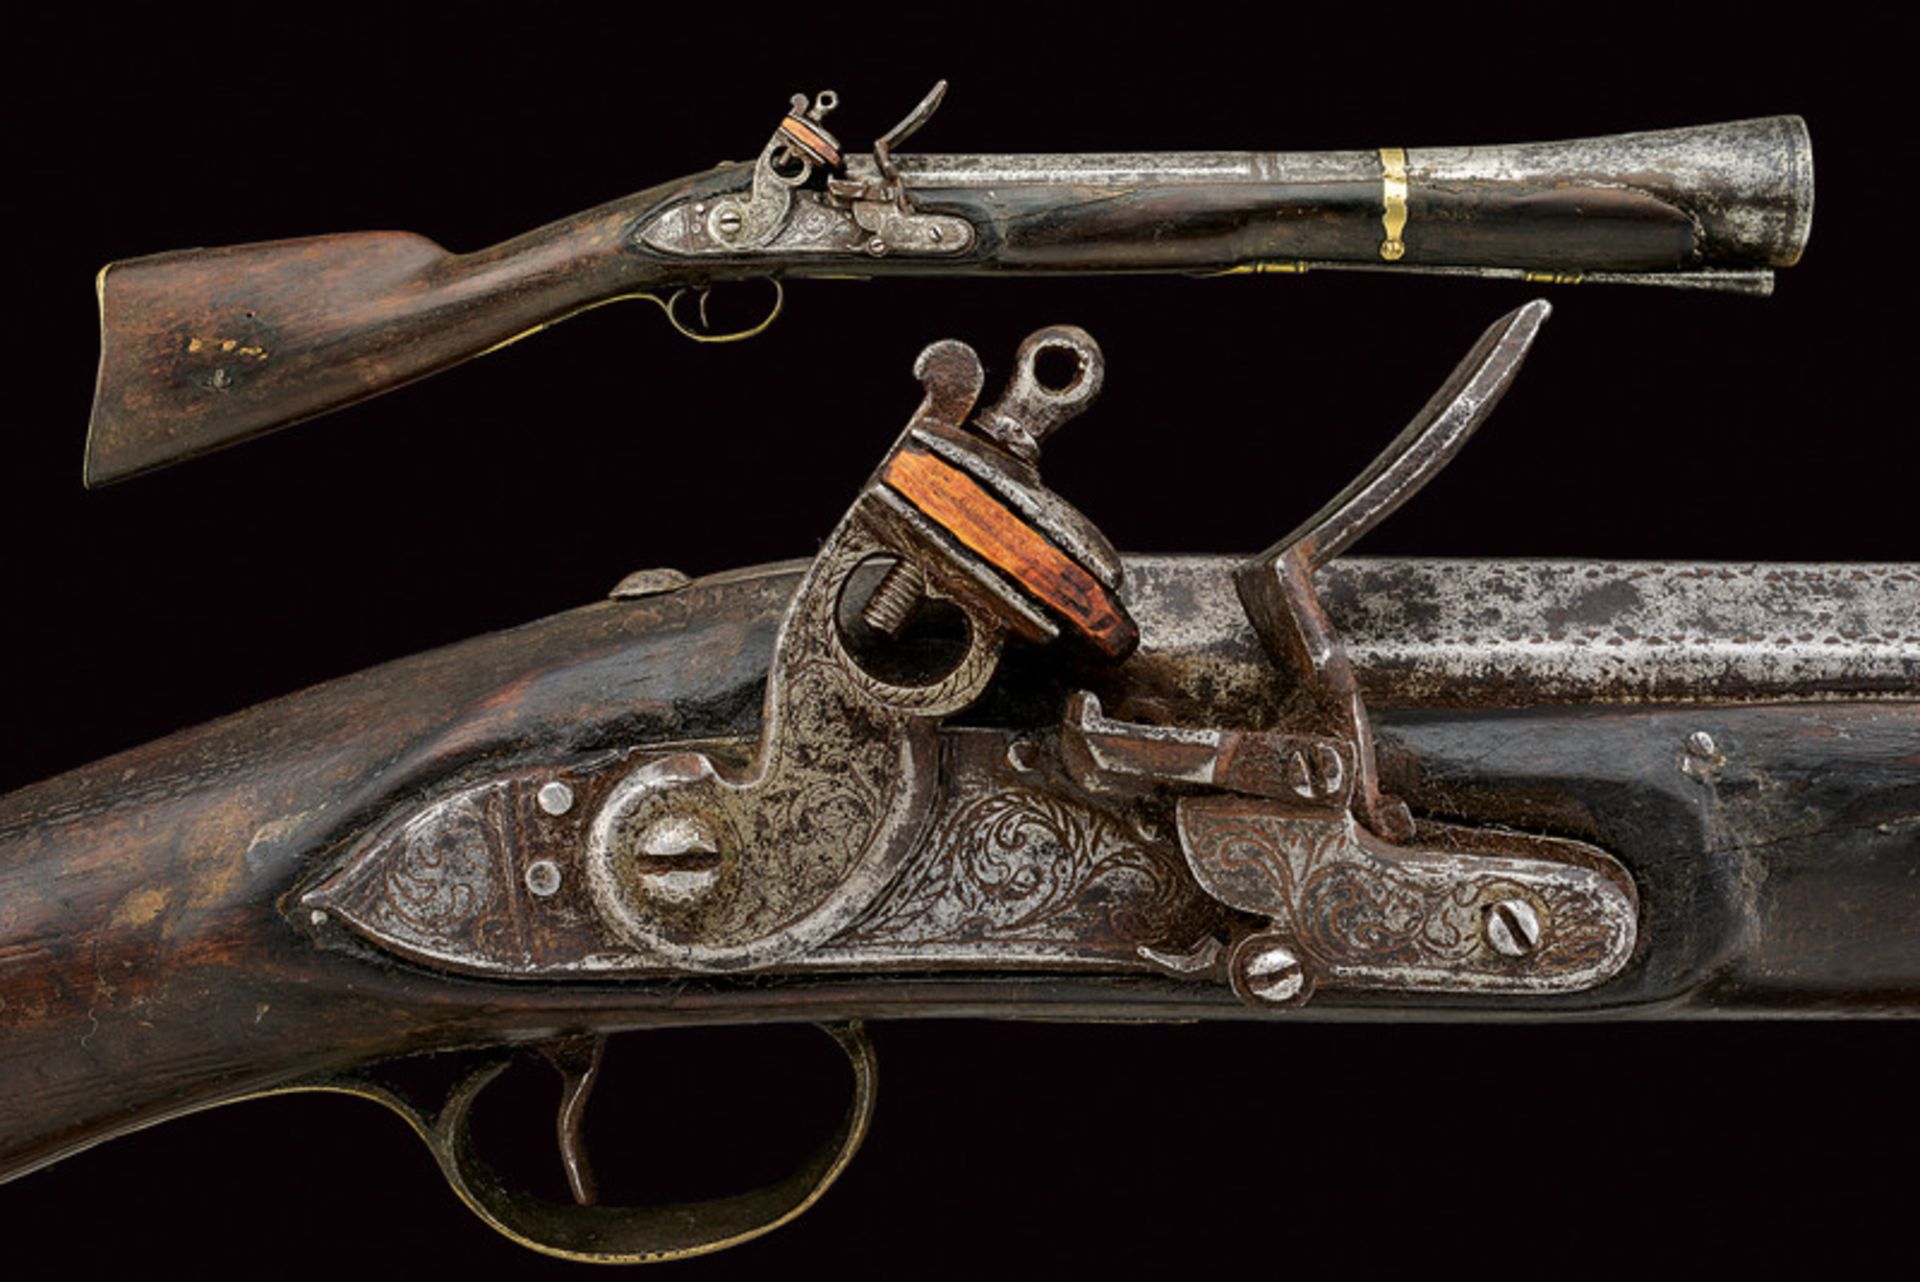 A blunderbuss flintlock gun